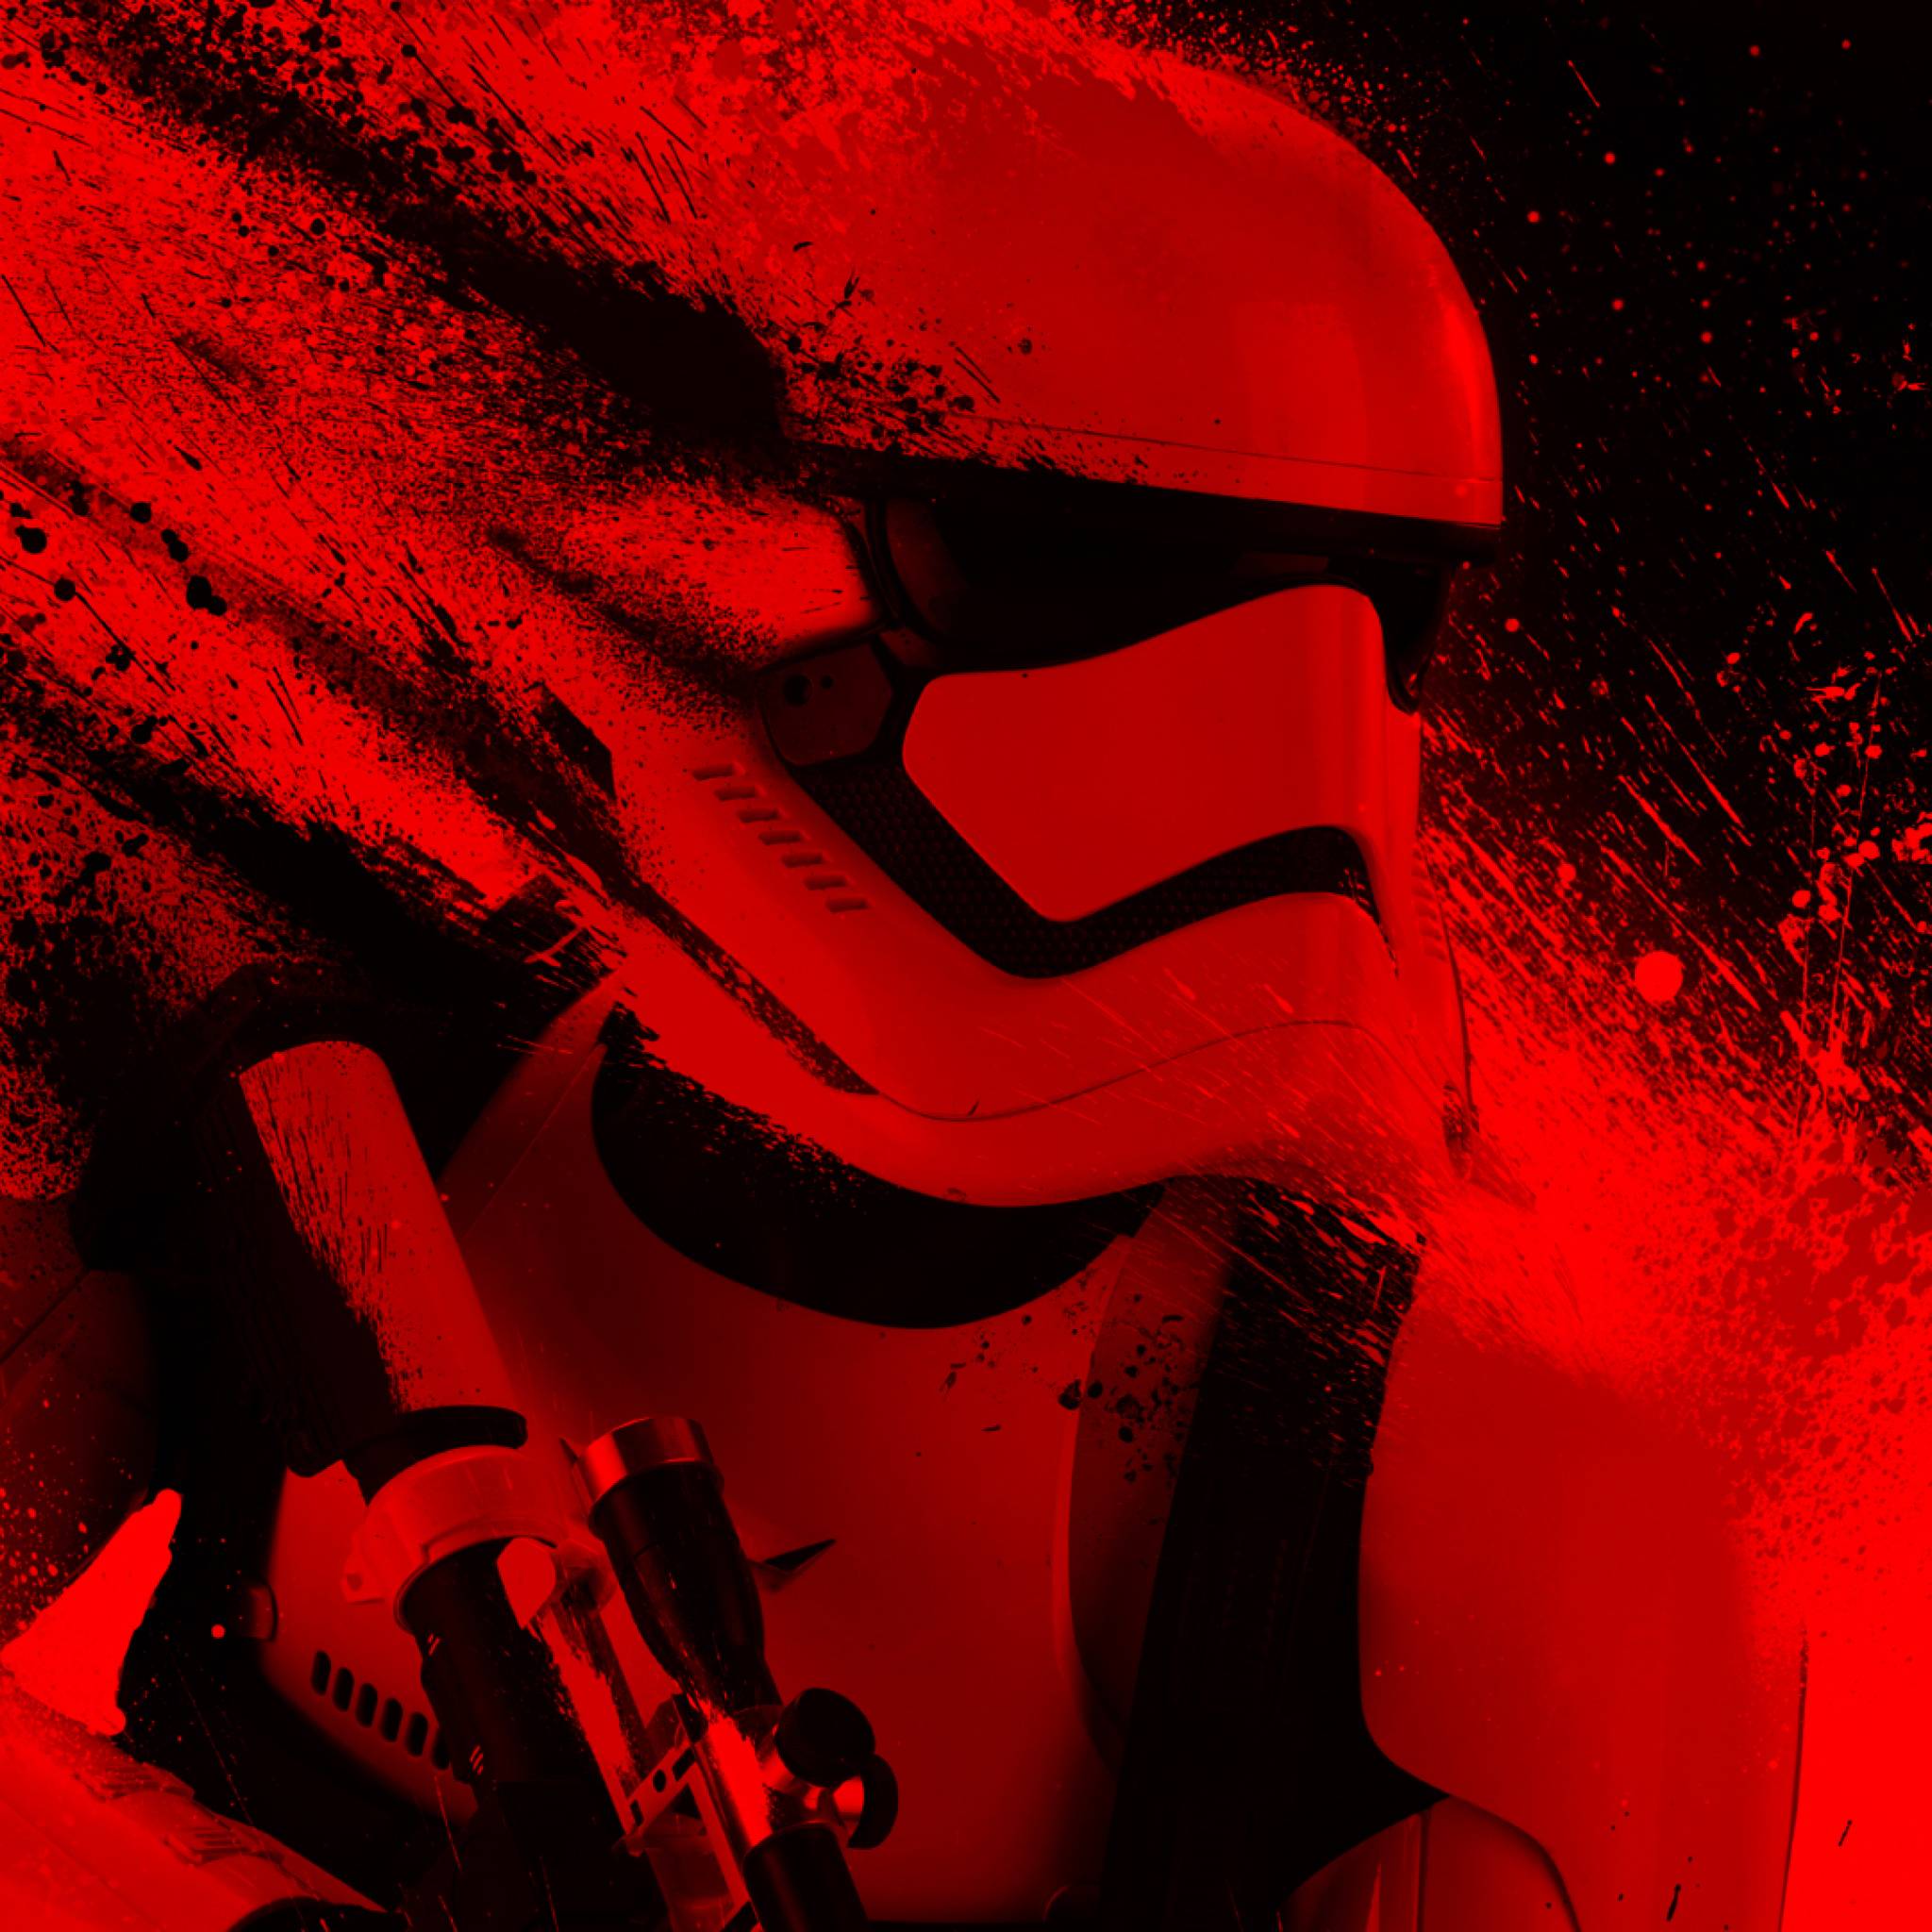 Nếu bạn là Fan của Star Wars, Red Stormtrooper Wallpaper sẽ không làm bạn thất vọng. Tông màu đỏ tuyệt đẹp và hình ảnh Stormtrooper gợi lên một cảm giác mới lạ, bắt mắt mà bạn không thể nào bỏ qua. Hãy tận hưởng cảm giác của sự mạnh mẽ và bắt đầu cuộc phiêu lưu trong các vì sao chiếu sáng.